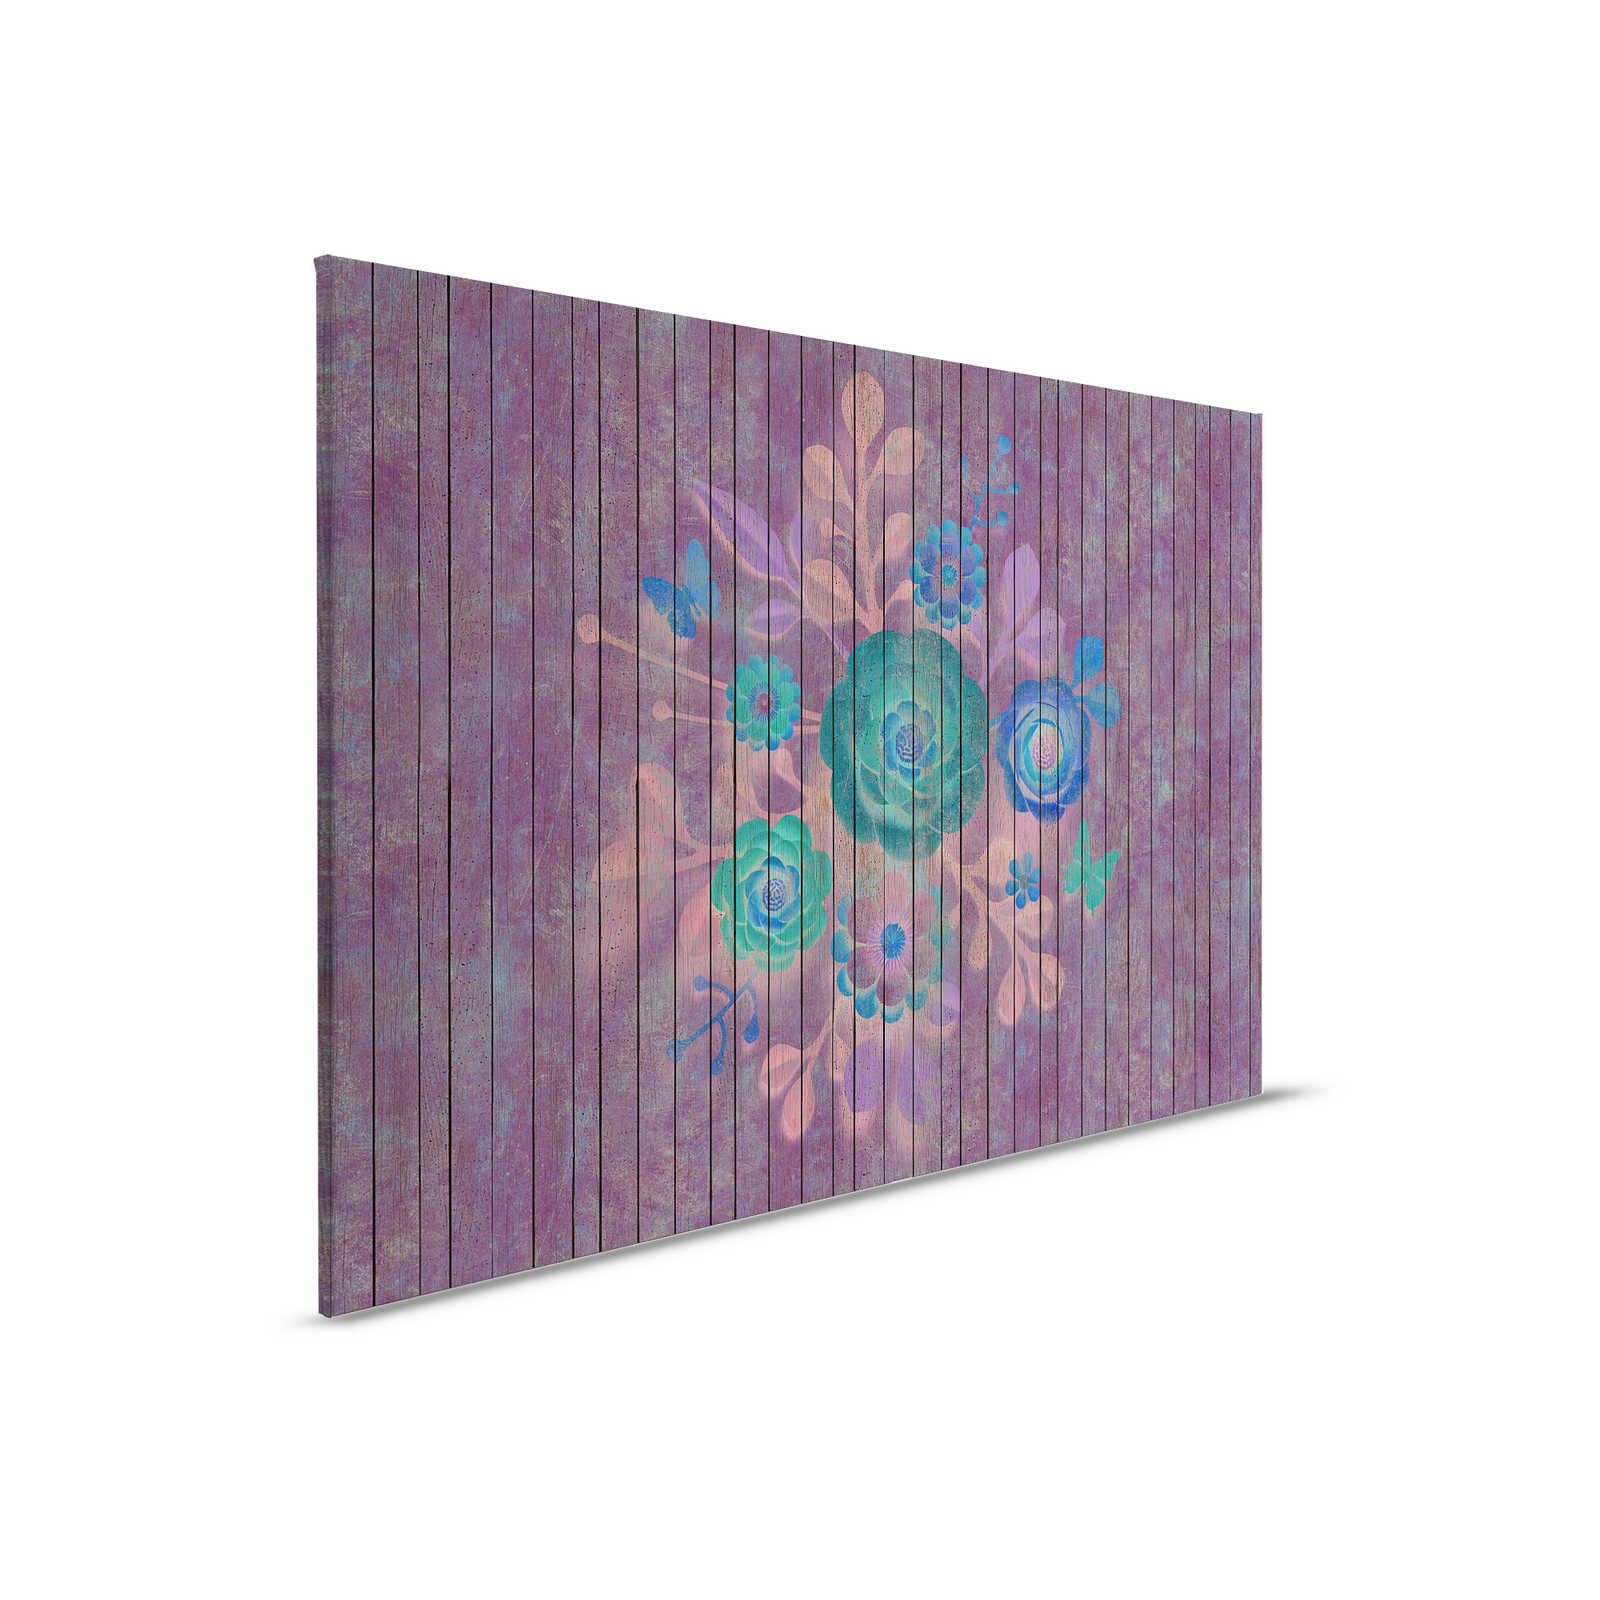 Spray bouquet 1 - Pintura en lienzo con flores sobre pared de tablero - Paneles de madera de ancho - 0,90 m x 0,60 m
